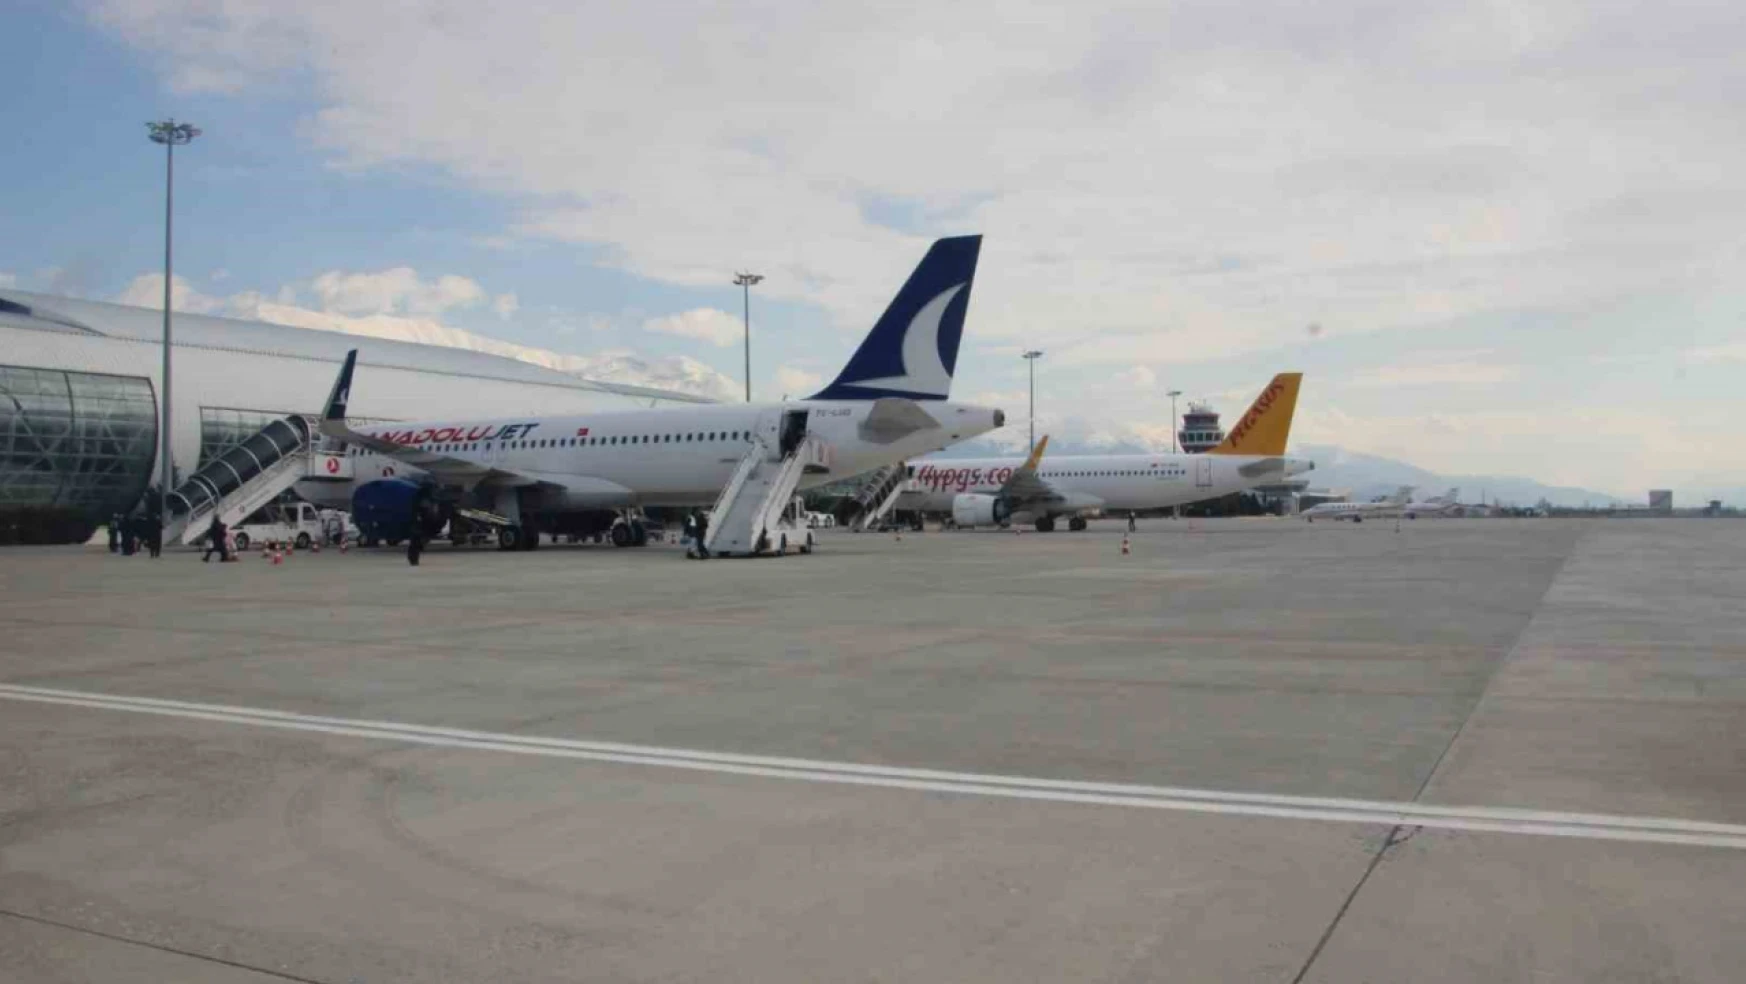 Erzincan Yıldırım Akbulut Havalimanı'ndan mart ayında 29 bin 680 yolcu faydalandı